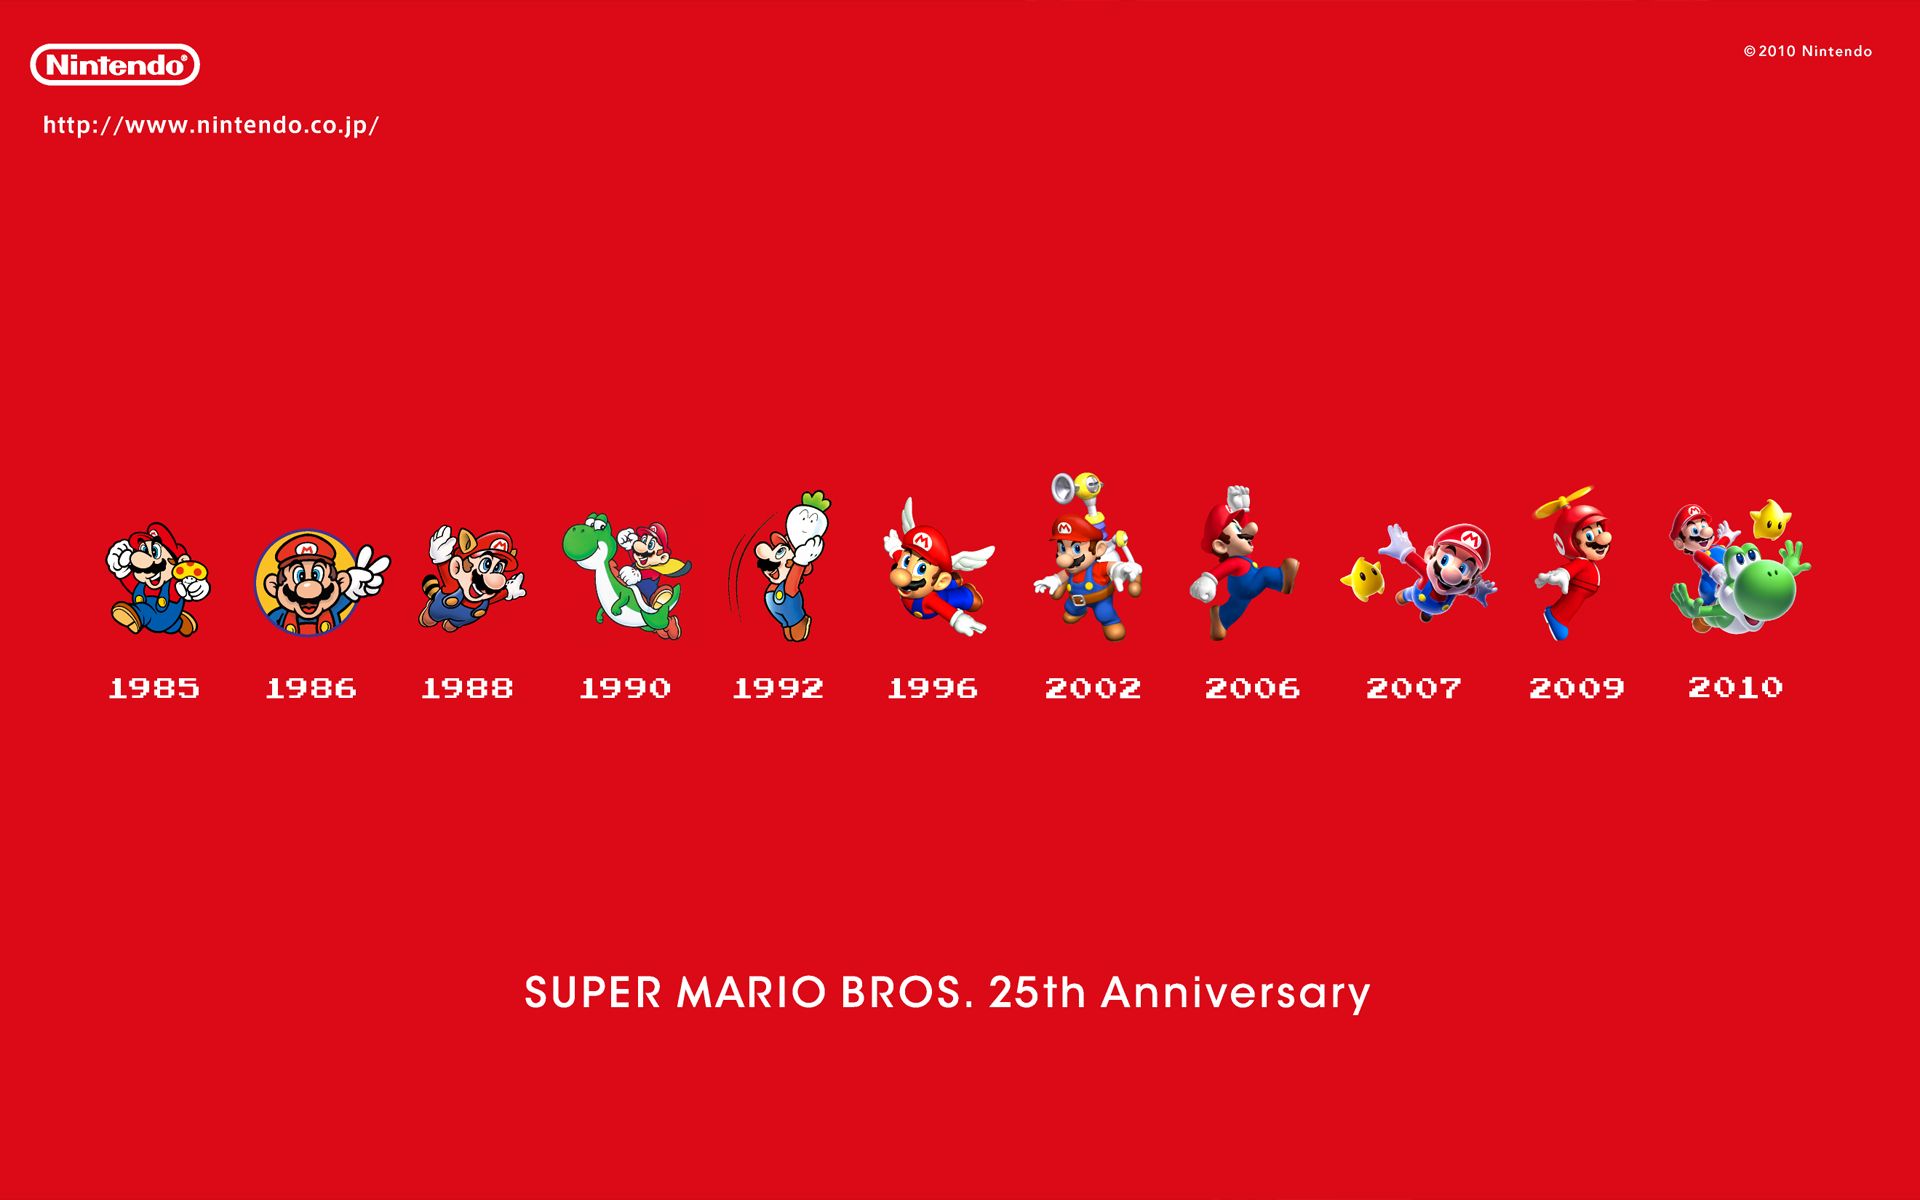 Nintendo, Mario Bros, Super Mario, Super Mario Bros., simple background - desktop wallpaper